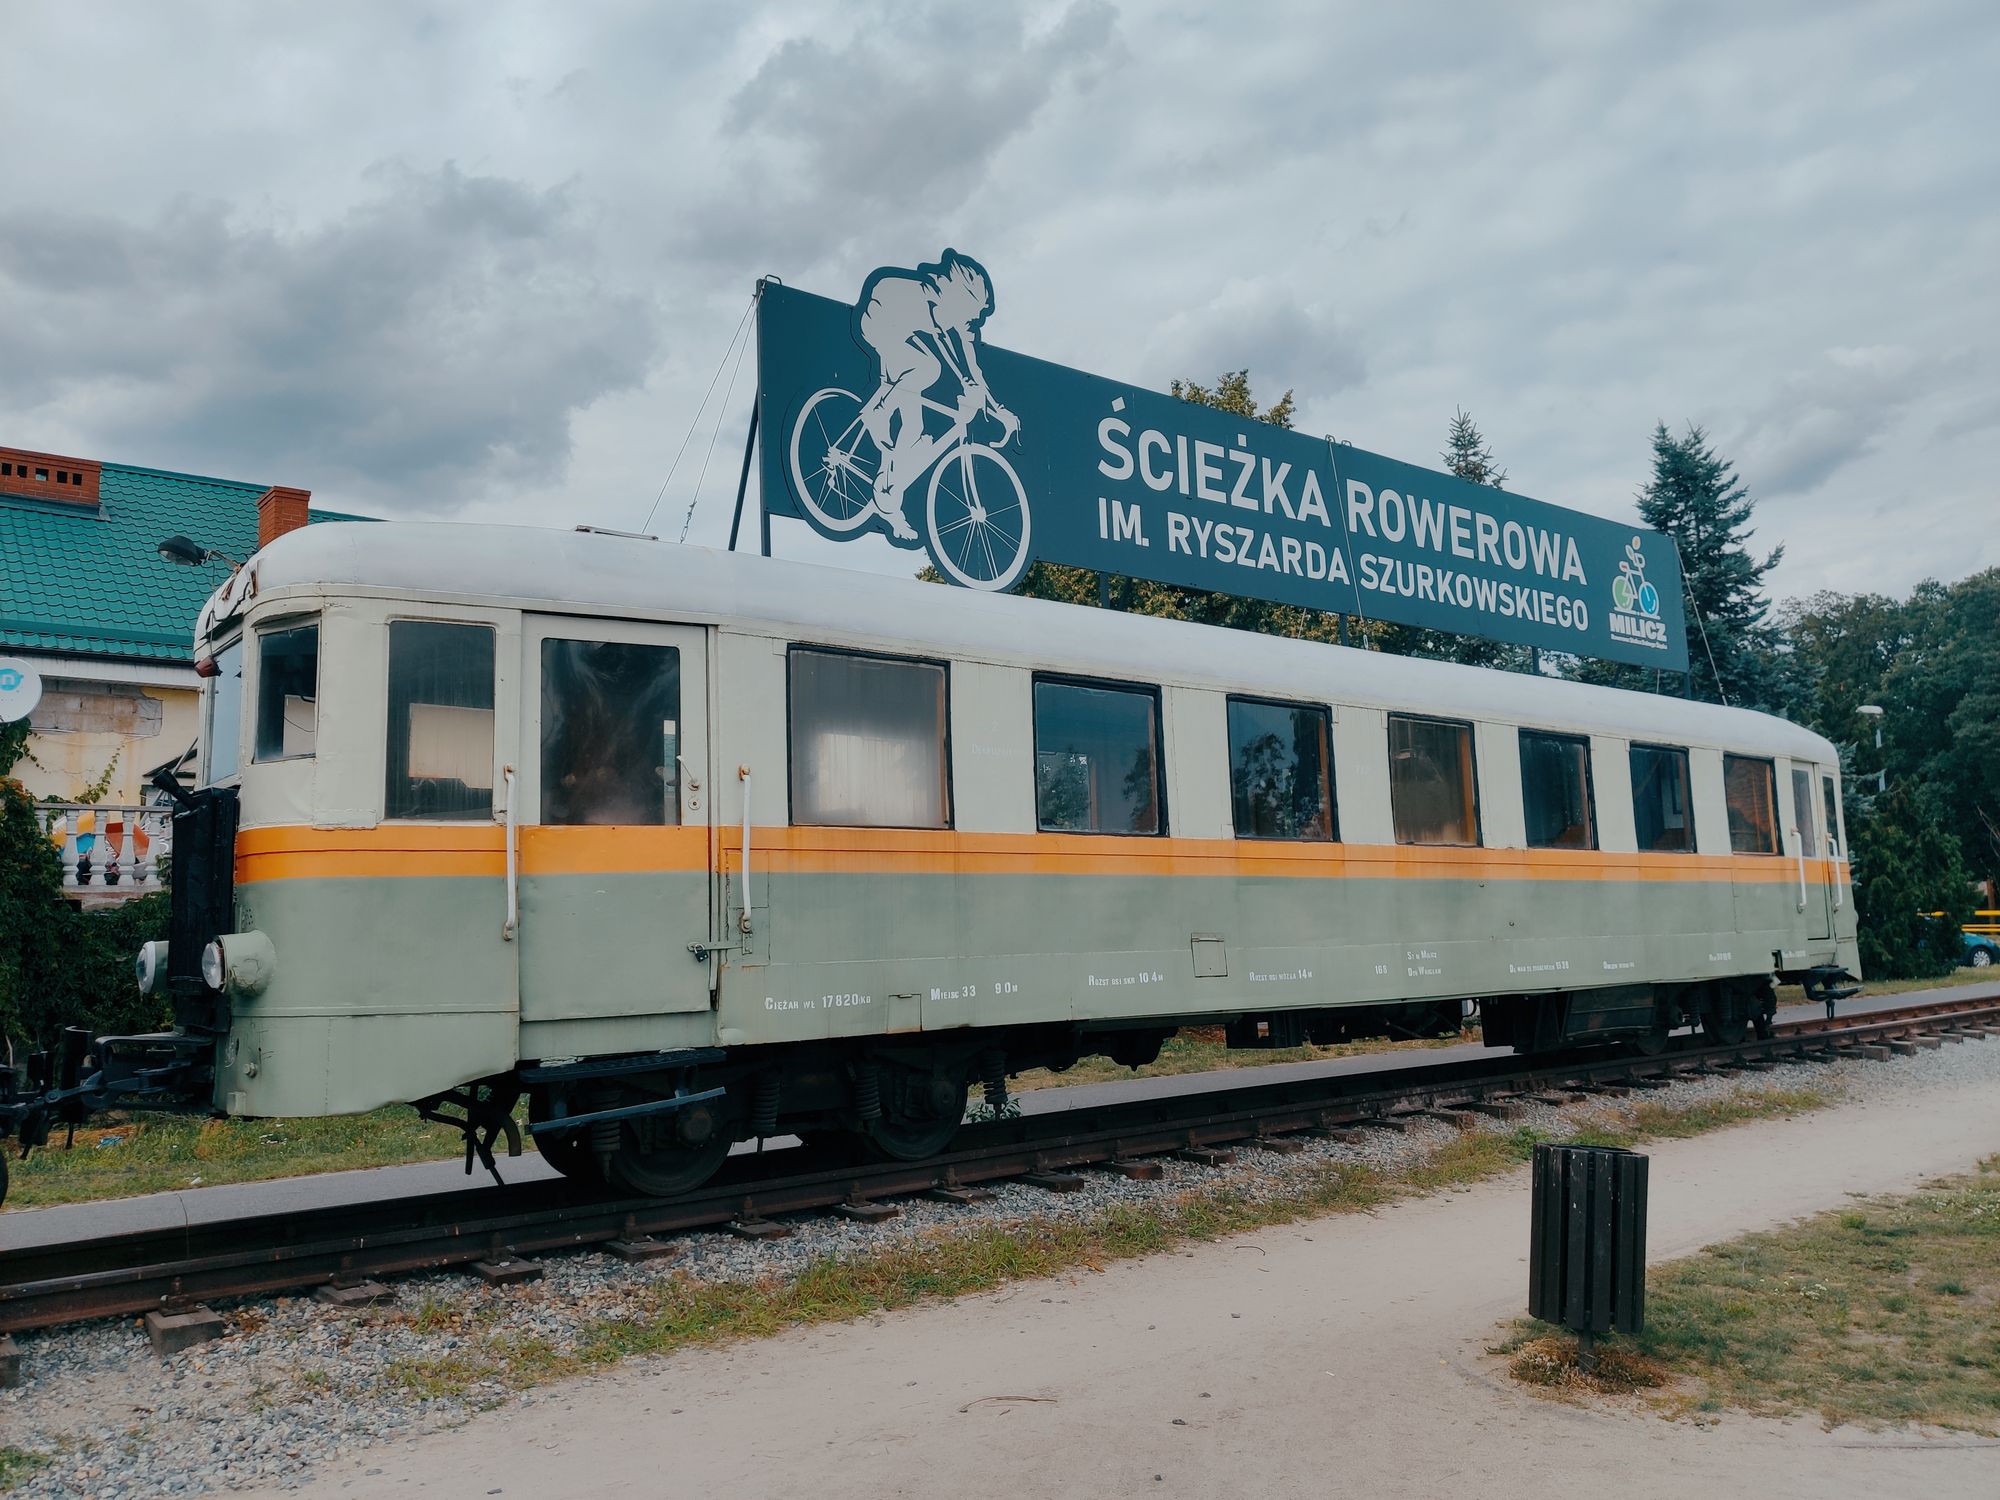 Wagon na stacji Milicz-Zamek, na trasie Ścieżki rowerowej im. Ryszarda Szurkowskiego. Obok znajduje się duży plac z wiatami, ławkami i figurą karpia.